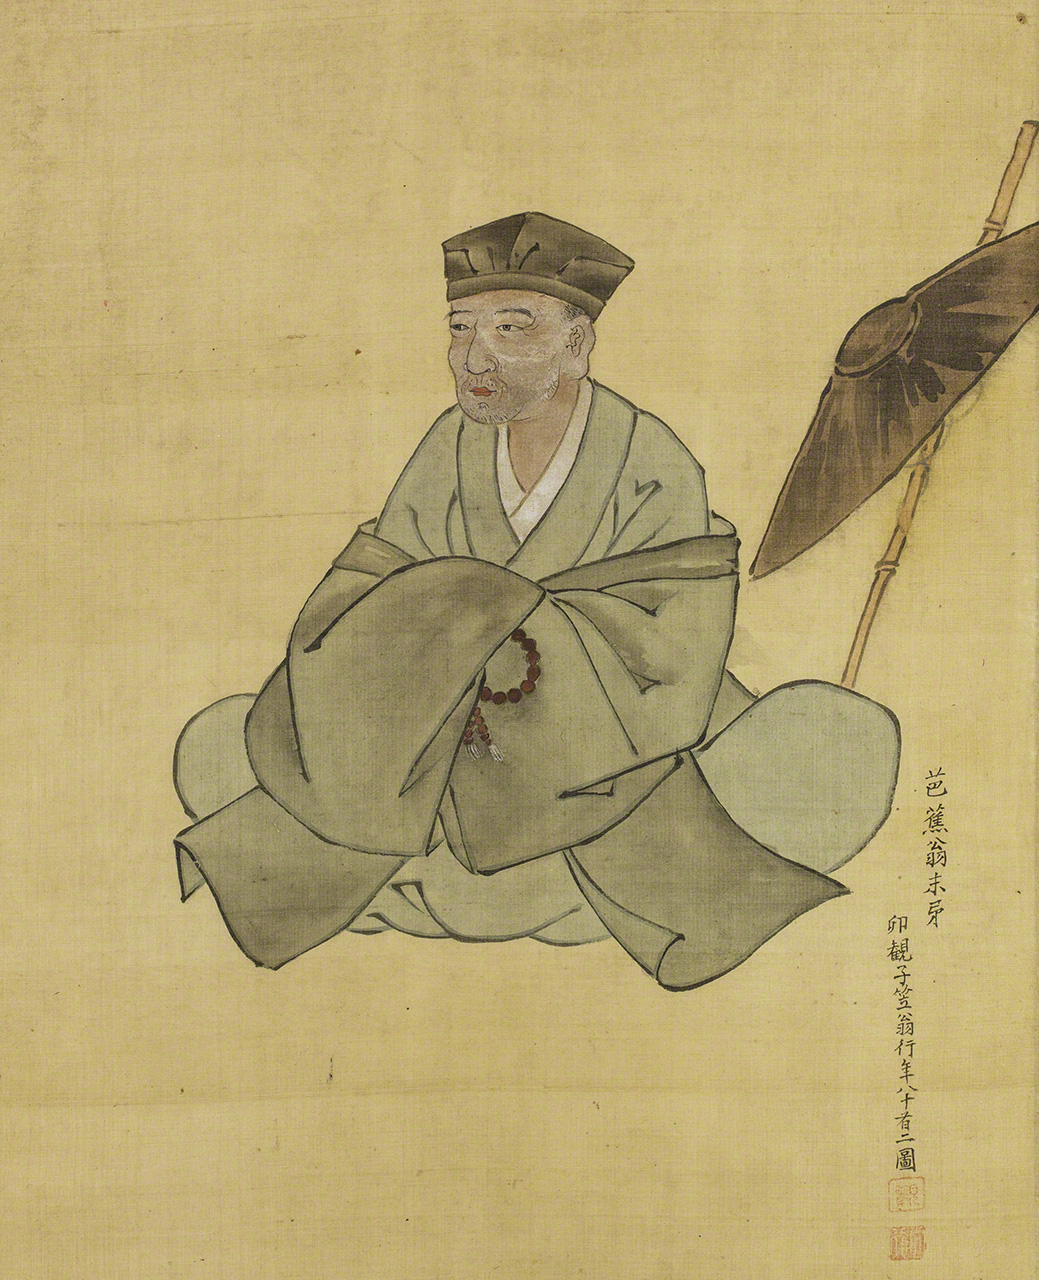 صورة لباشو من رسم أوغاوا هاريتسو وهو فنان وحرفي ورنيش بالإضافة لكونه أحد تلامذة باشو (الصورة بإذن من متحف باشو-أو التذكاري).